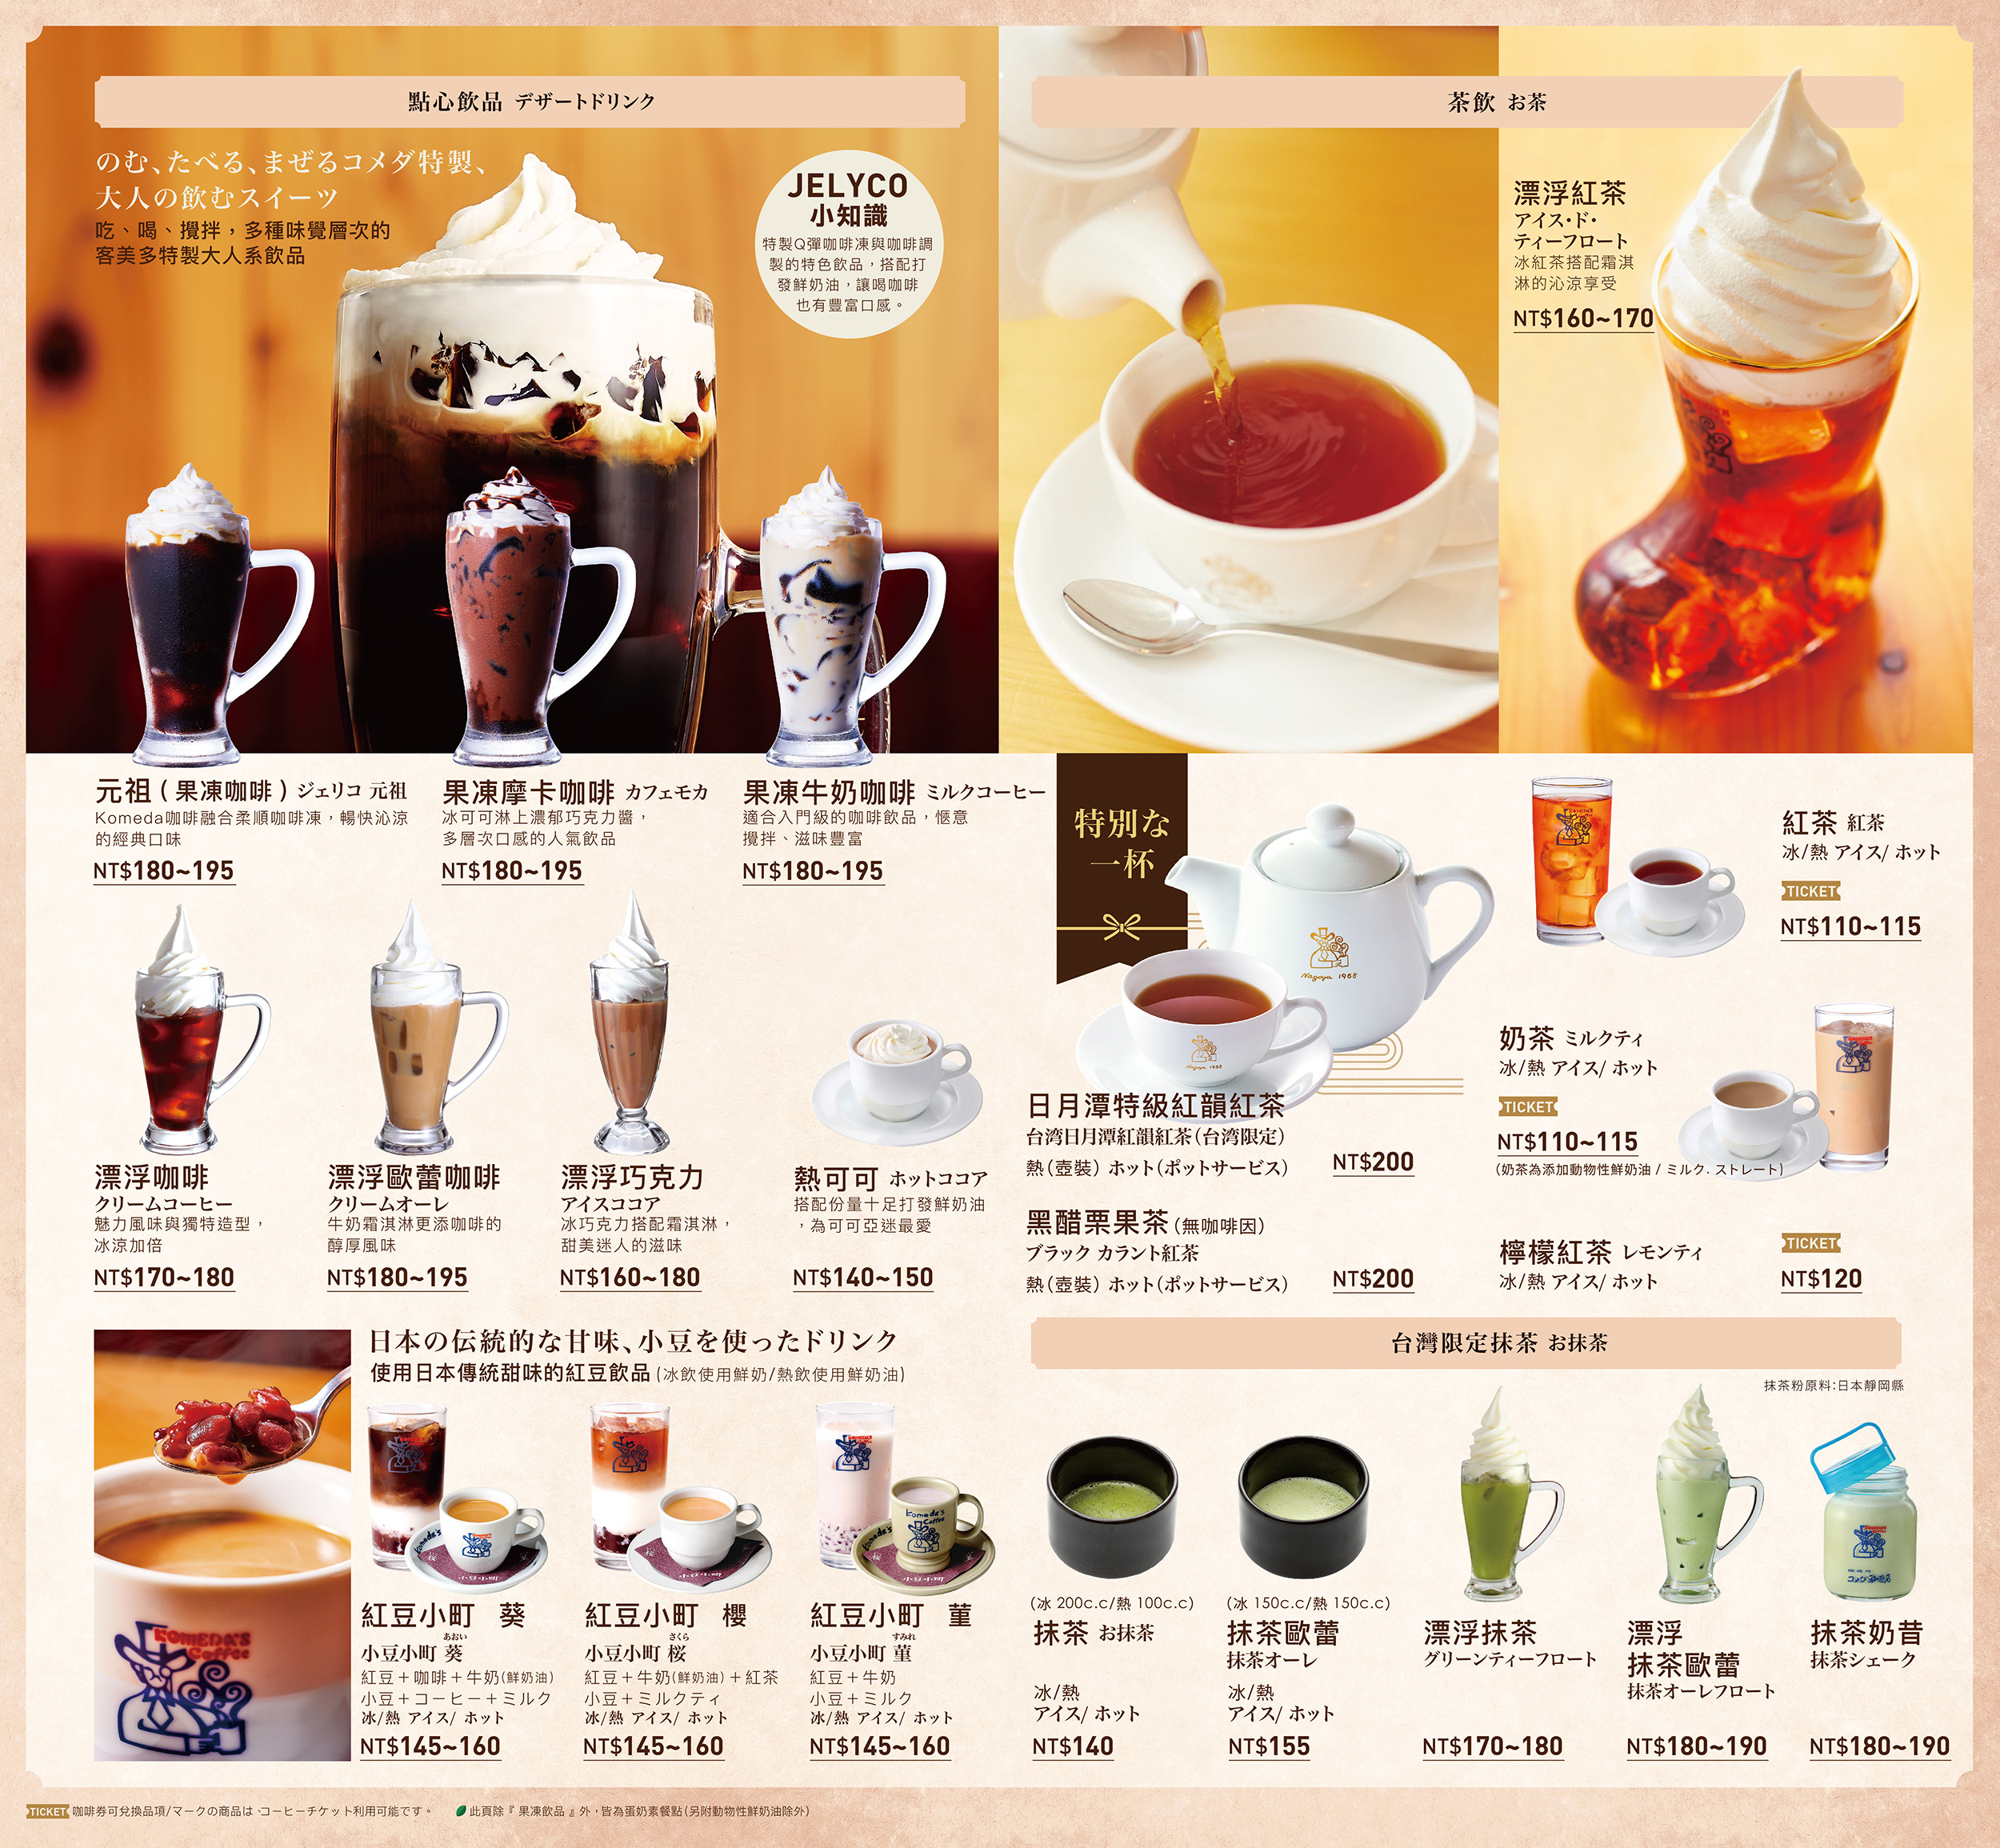 【食記】【高雄-前金】客美多咖啡大立店 Komeda‘s C